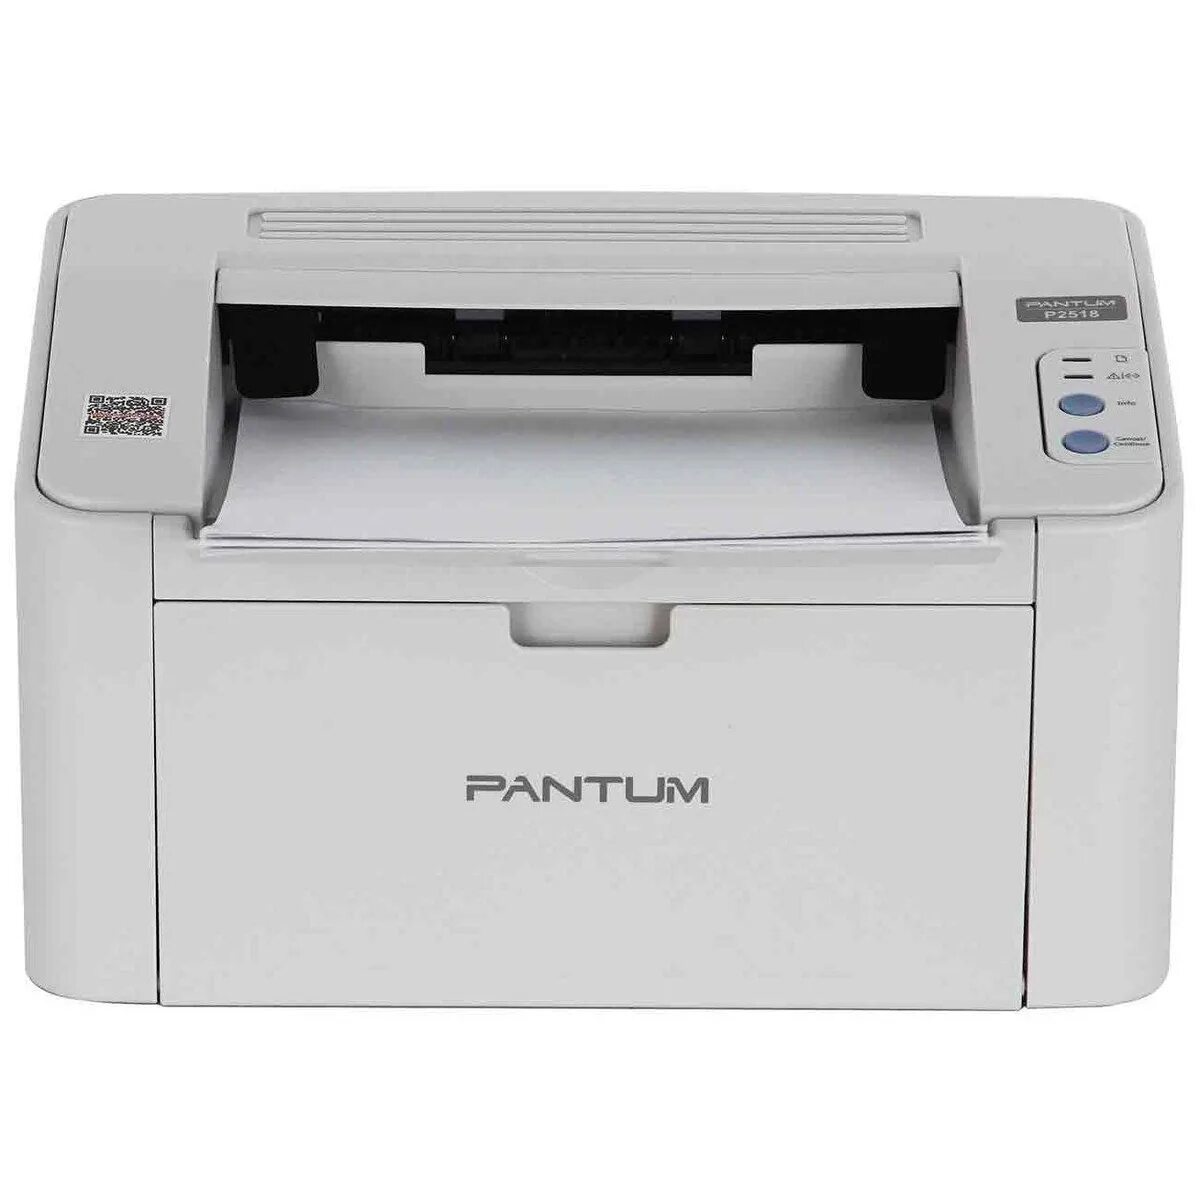 Принтер p2200 series. Принтер лазерный Pantum p2200. Принтер лазерный Pantum p2500nw. Принтер лазерный Pantum p2518. Принтер лазерный Pantum p2200 a4.